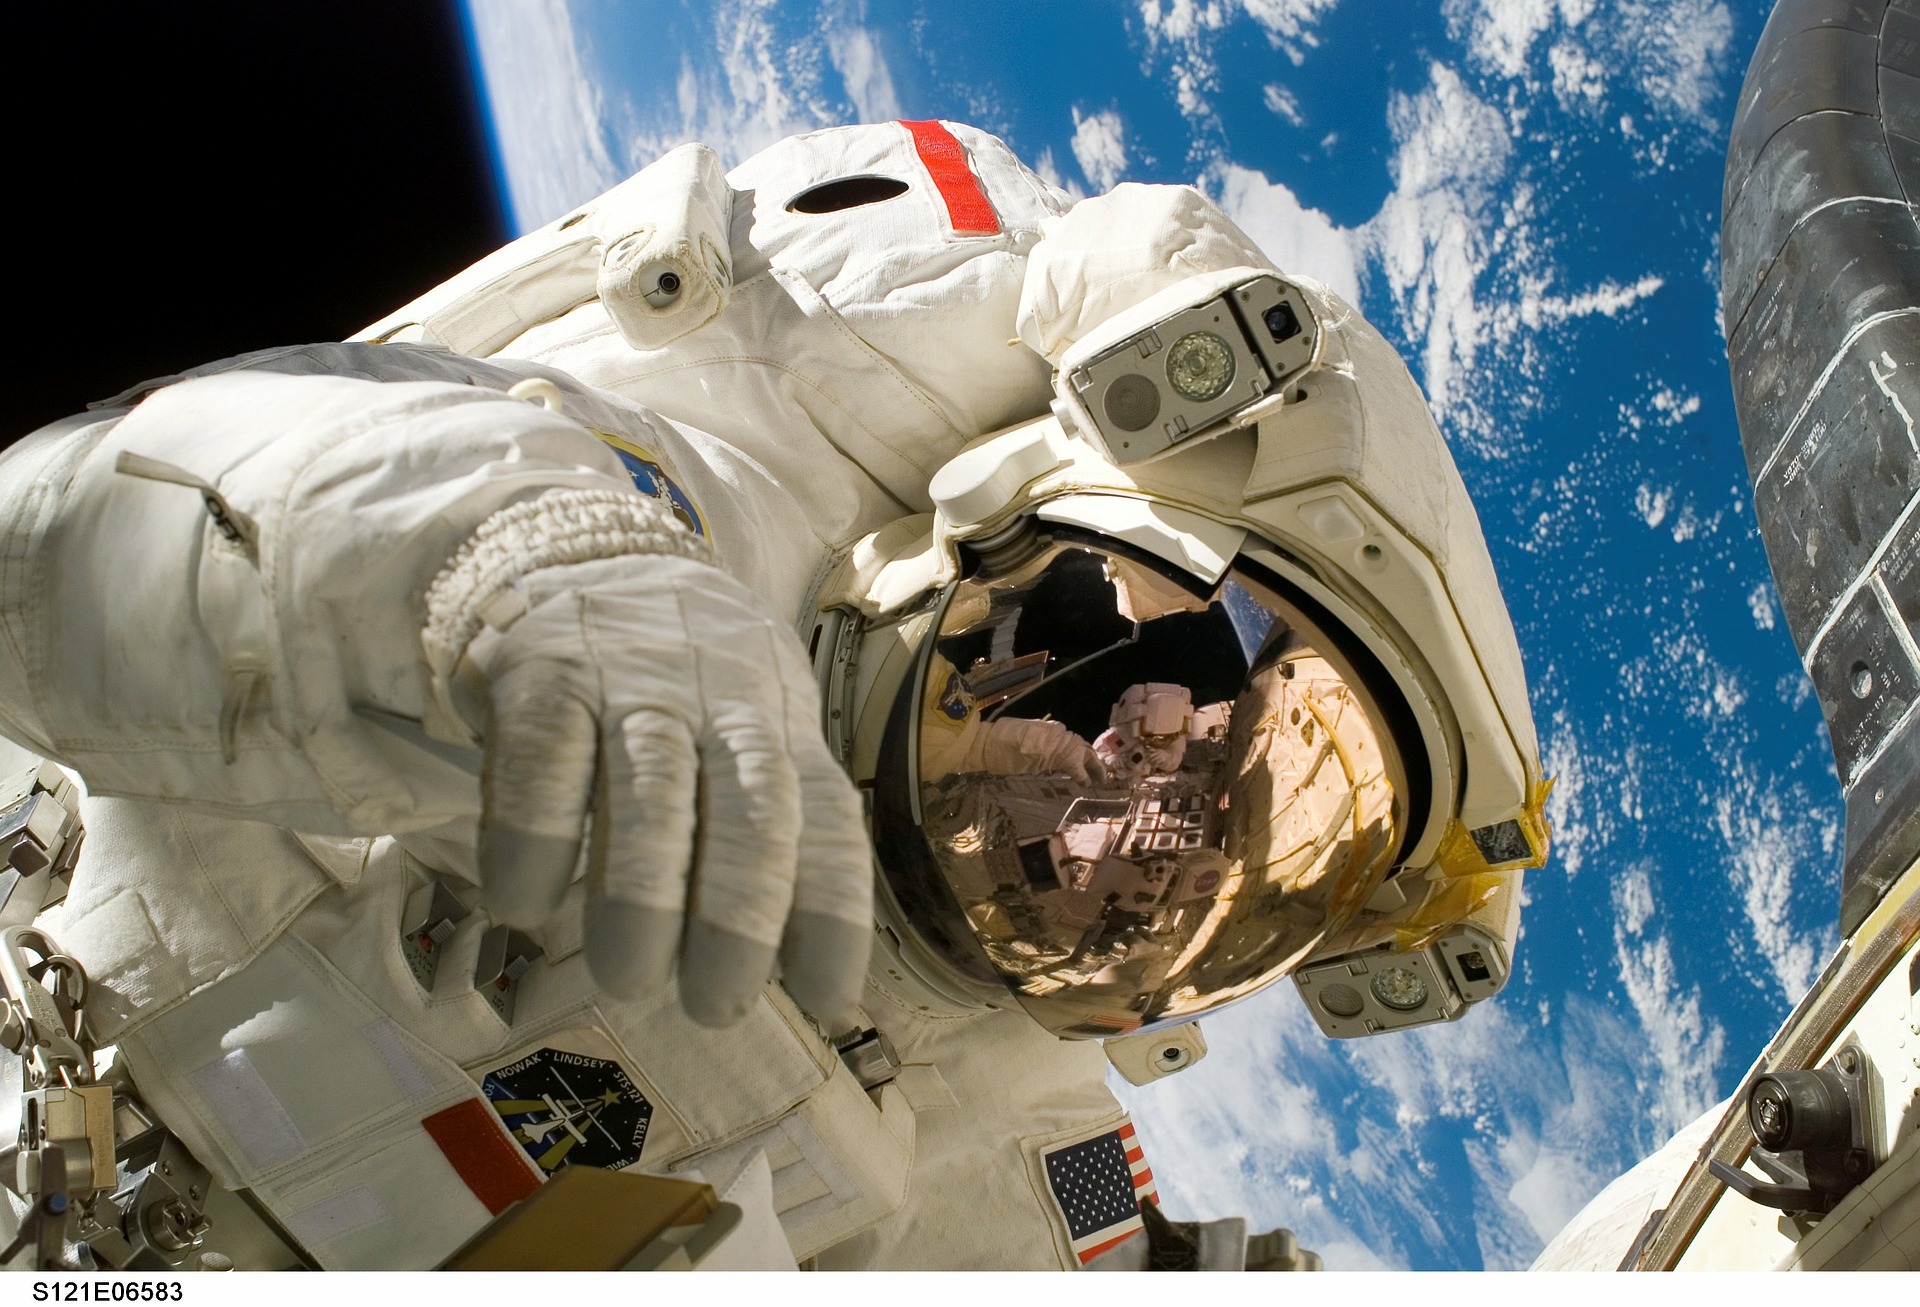 Keď astronauti opustia ochrannú atmosféru Zeme a magnetické pole, sú vystavení veľkému množstvu ionizujúceho vesmírneho žiarenia. Je to podobné tomu, čo zažívajú piloti lietadiel a stewardi, ale podľa NASA sú úrovne oveľa vyššie - ide o ekvivalent 150 až 6 000 röntgenových snímok hrudníka. Astronauti preto majú zvýšené riziko rakoviny, degeneratívnych ochorení kostí a chorôb, ktoré postihujú centrálny nervový systém. Vedci z University of Nevada teraz bijú na poplach kvôli možným cestám na Mars, ktoré by zahŕňali rok a pol v hlbokom vesmíre.